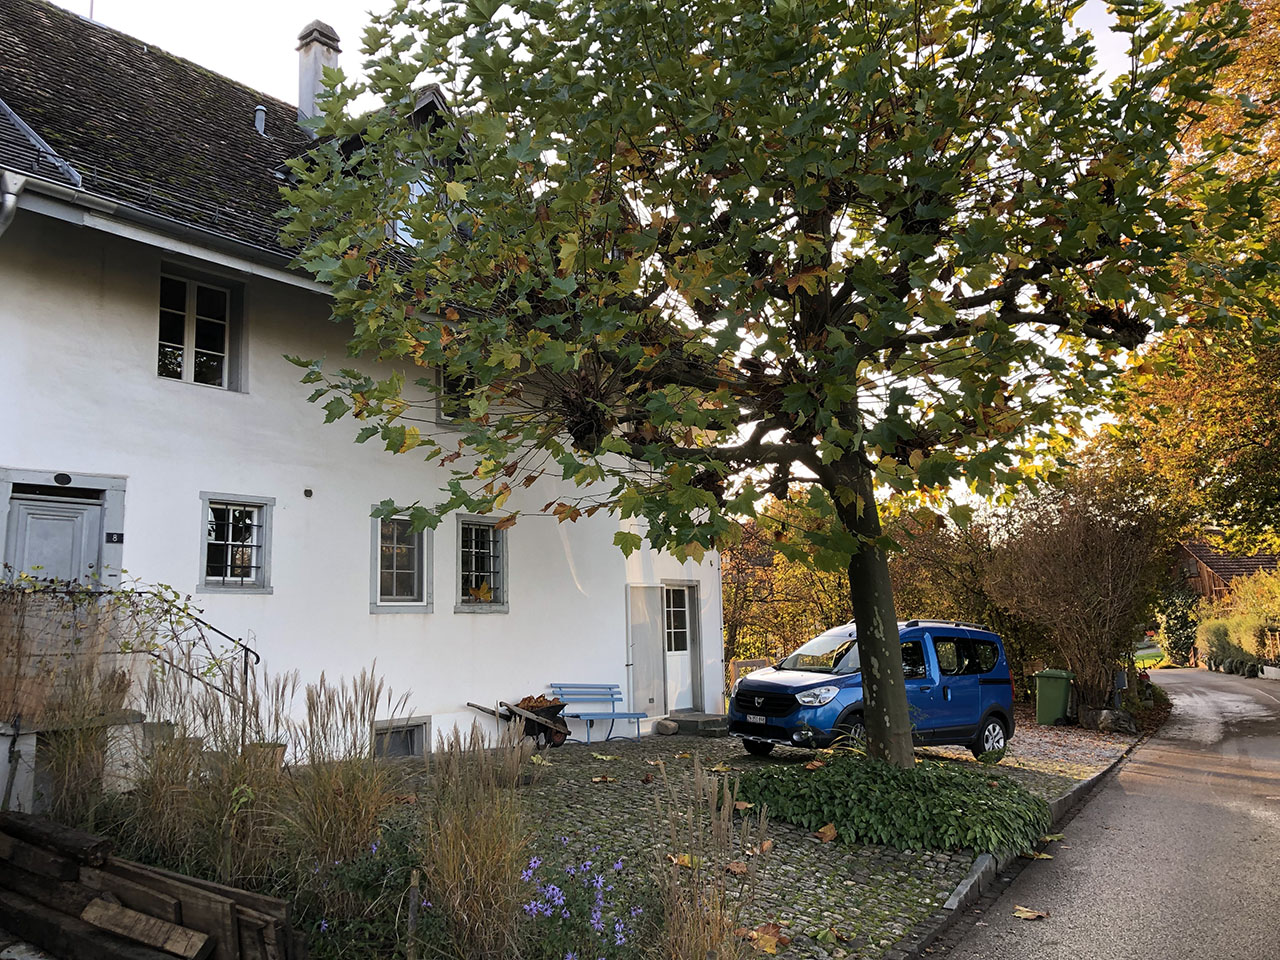 Lützelhuus Haus mit Platane 11-2022